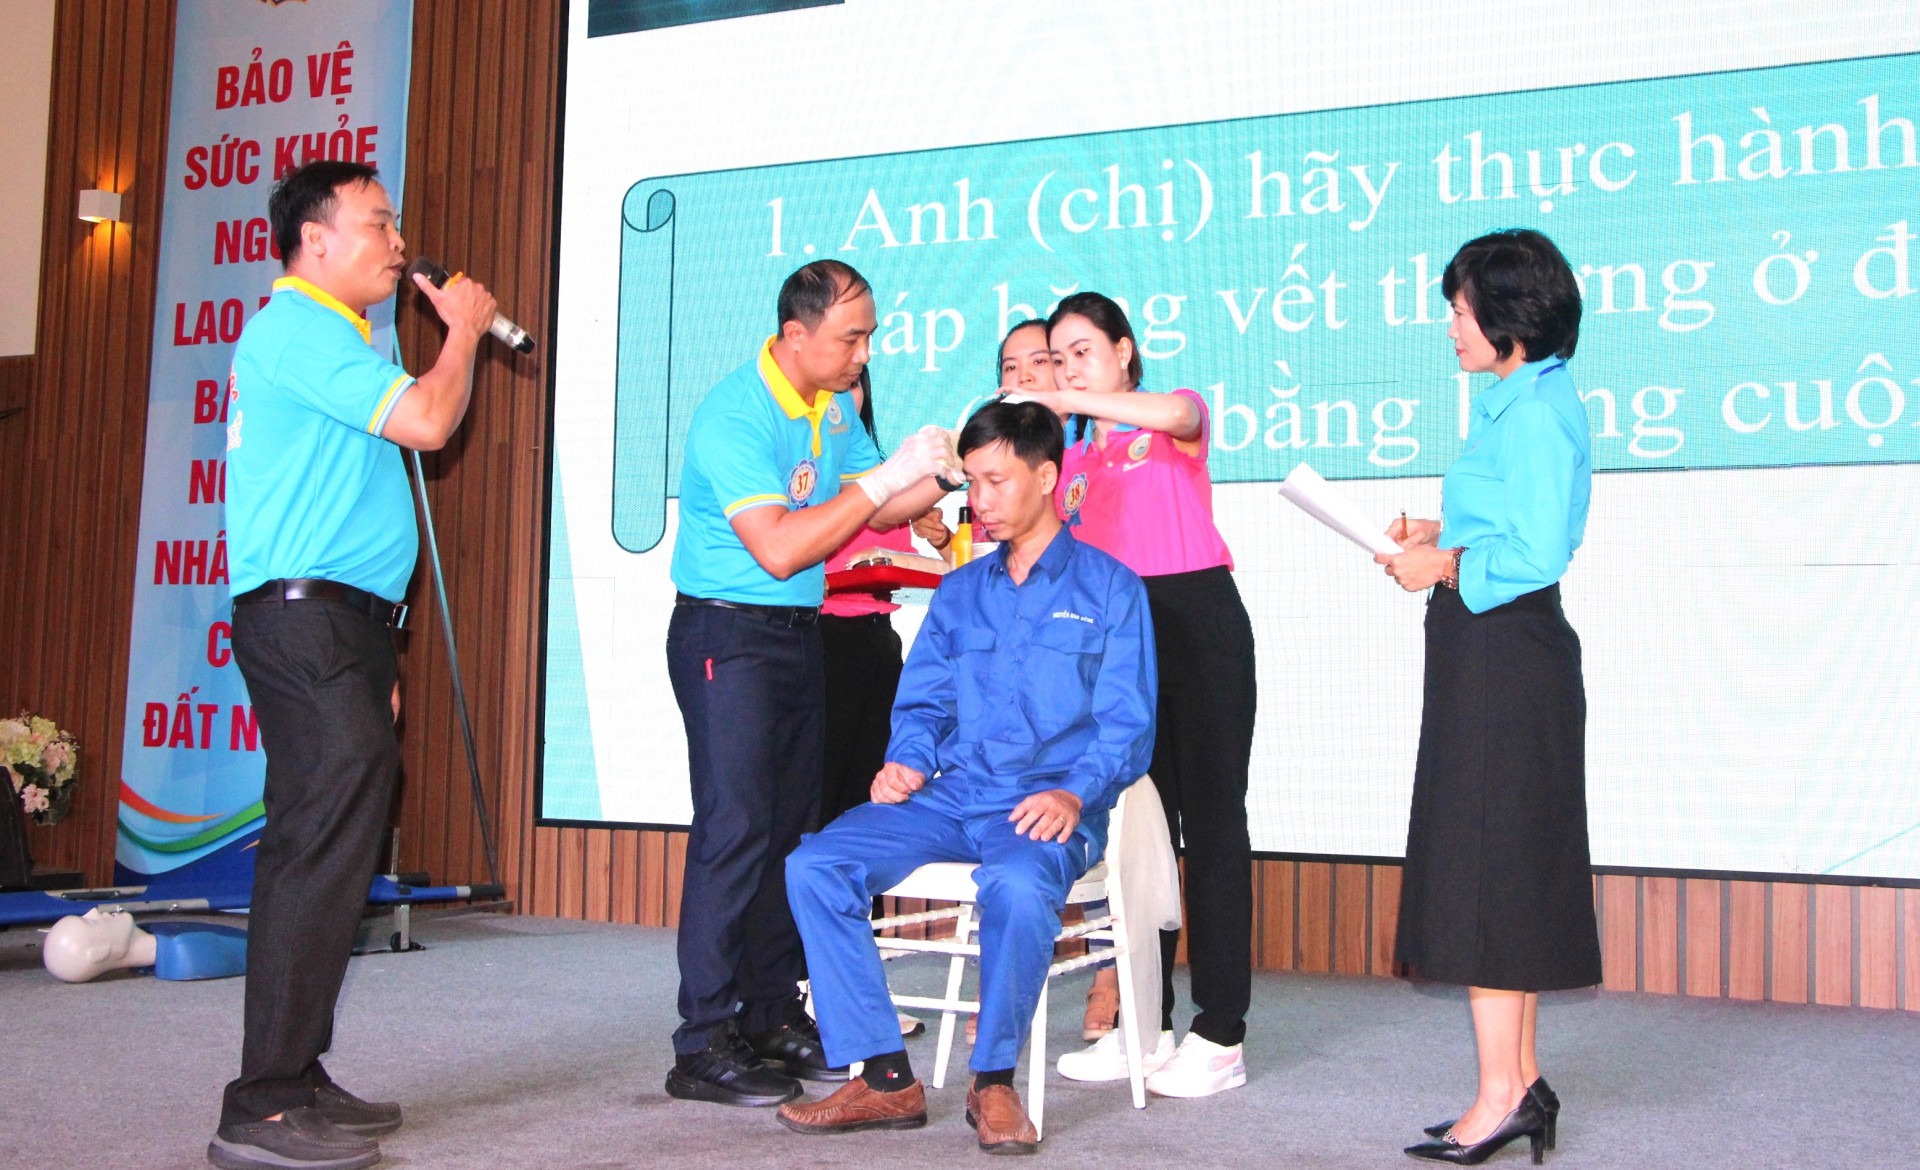 Phần thi thực hành sơ cứu của đội thi Công đoàn cơ sở Công ty TNHH Nhà nước MTV Yến sào Khánh Hòa.